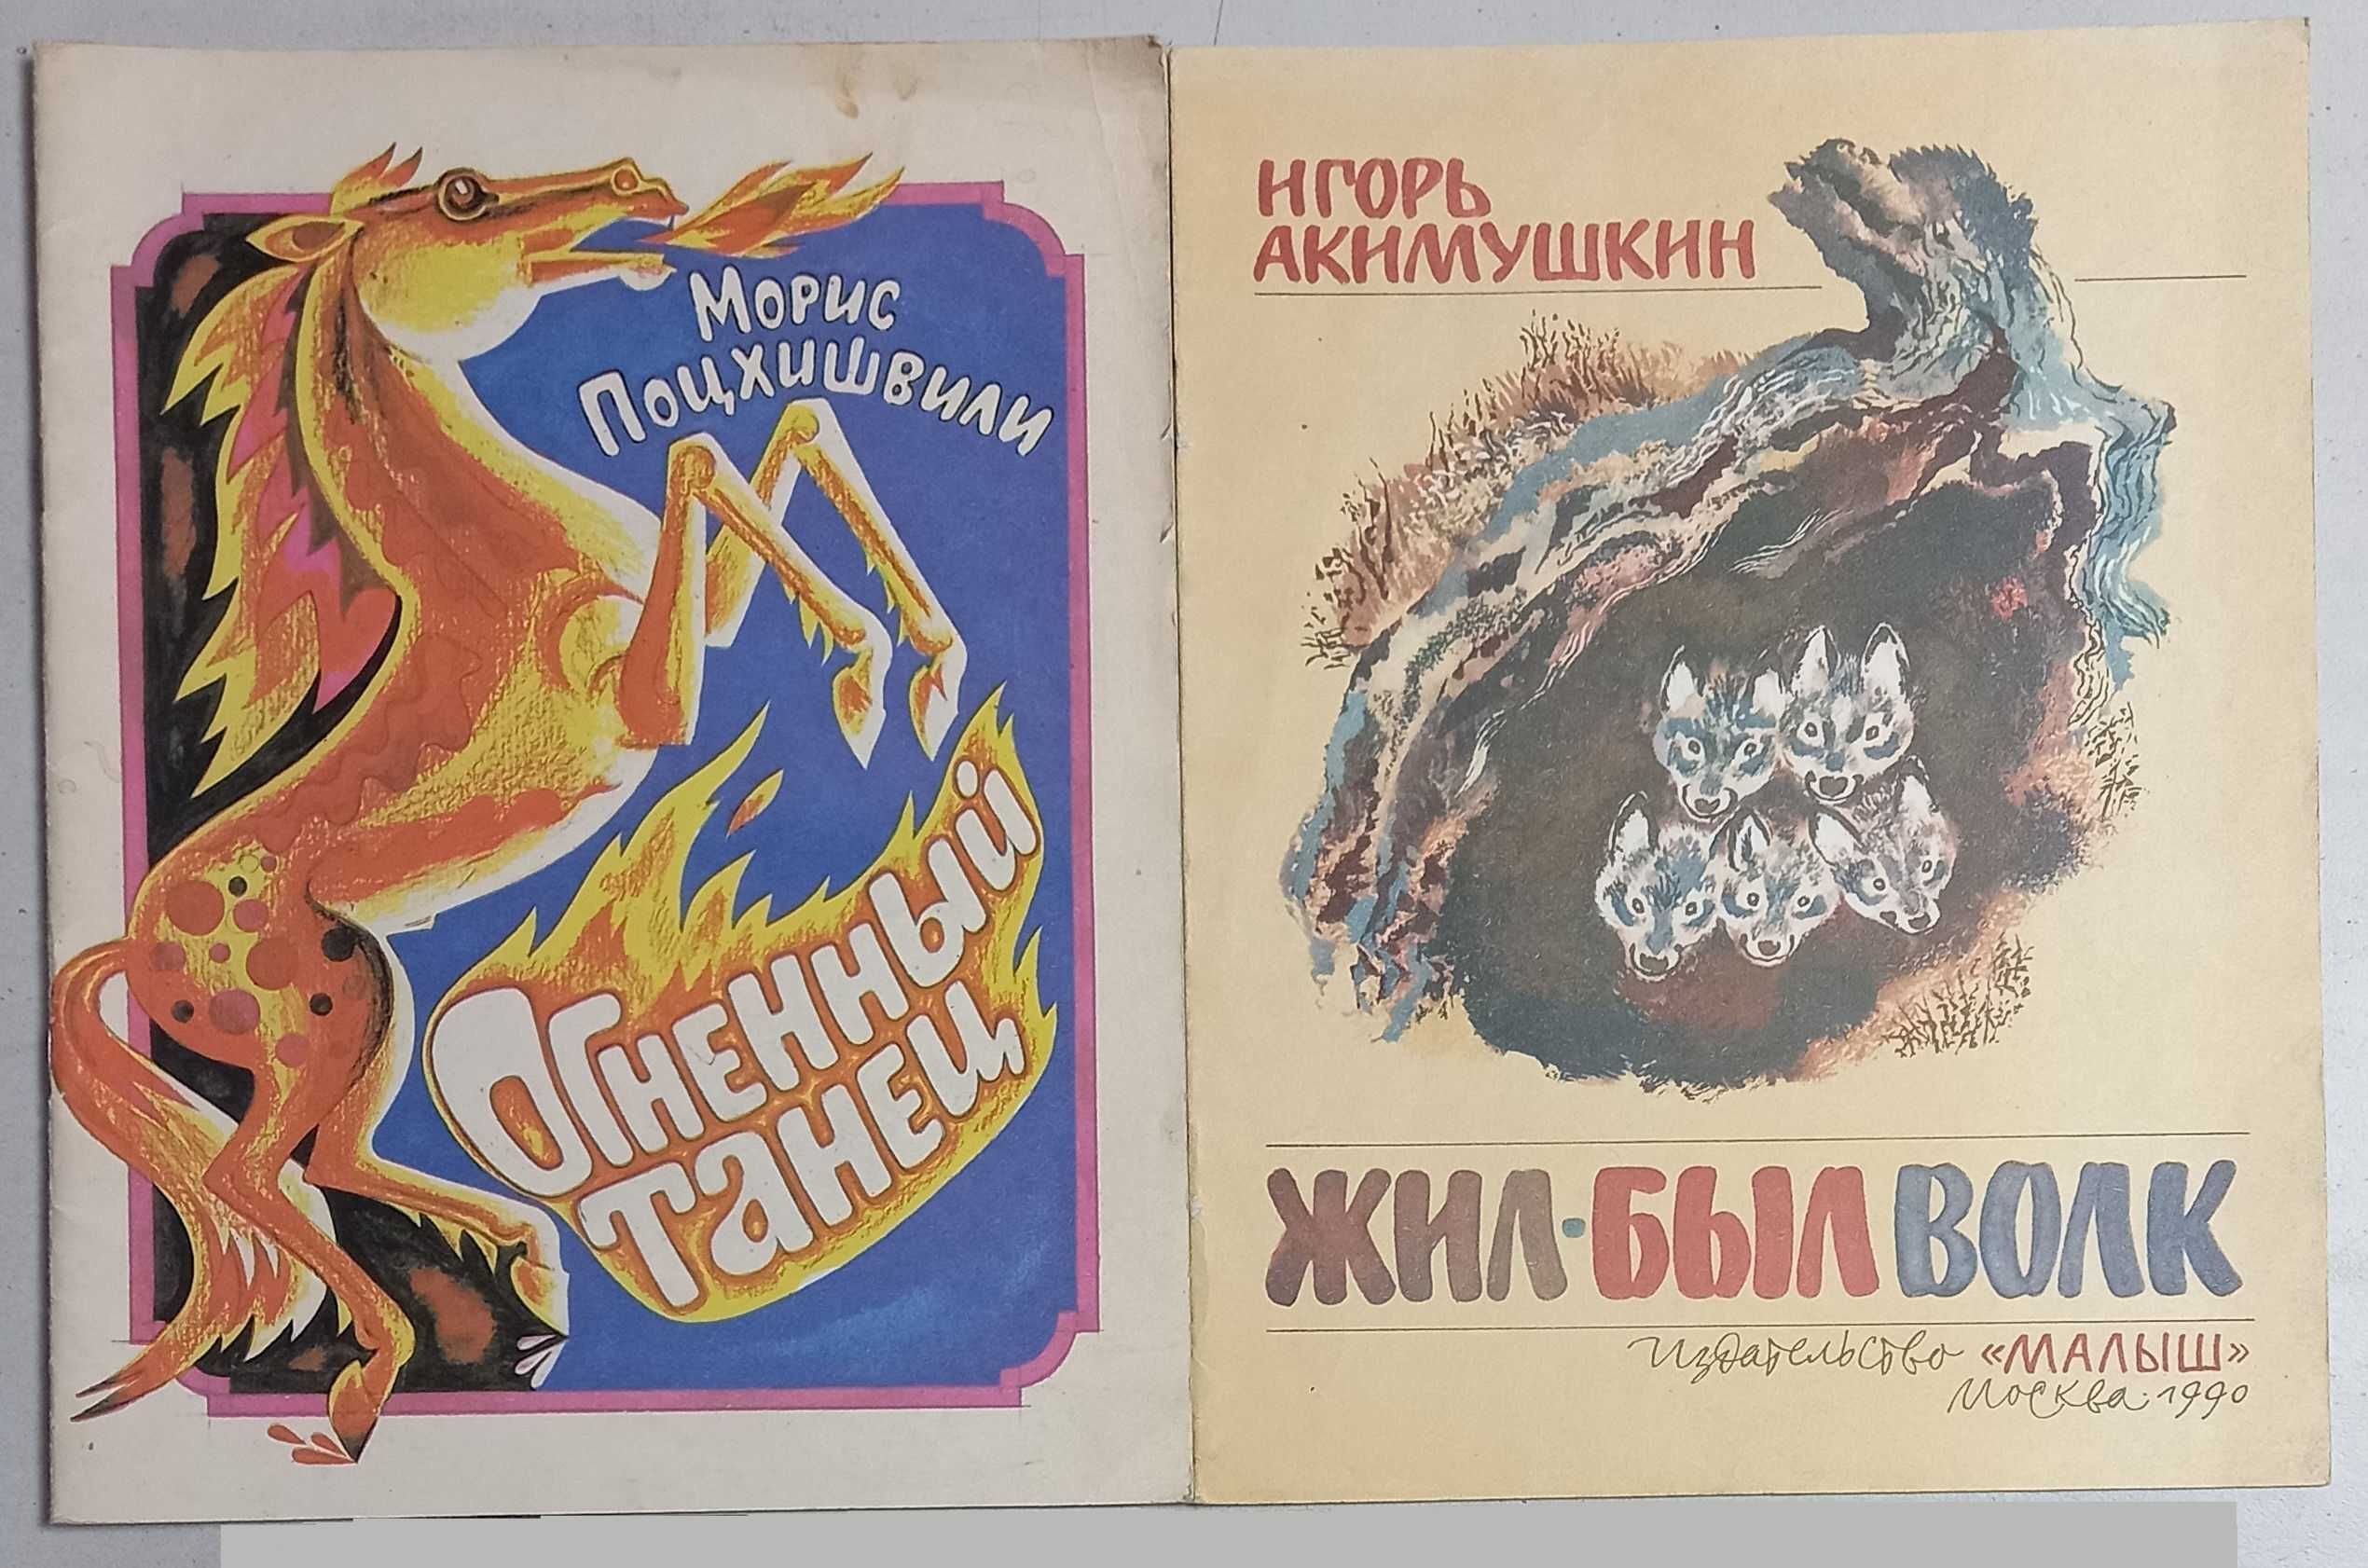 Детские иллюстрированные книги для дошкольного возраста, изд. в СССР